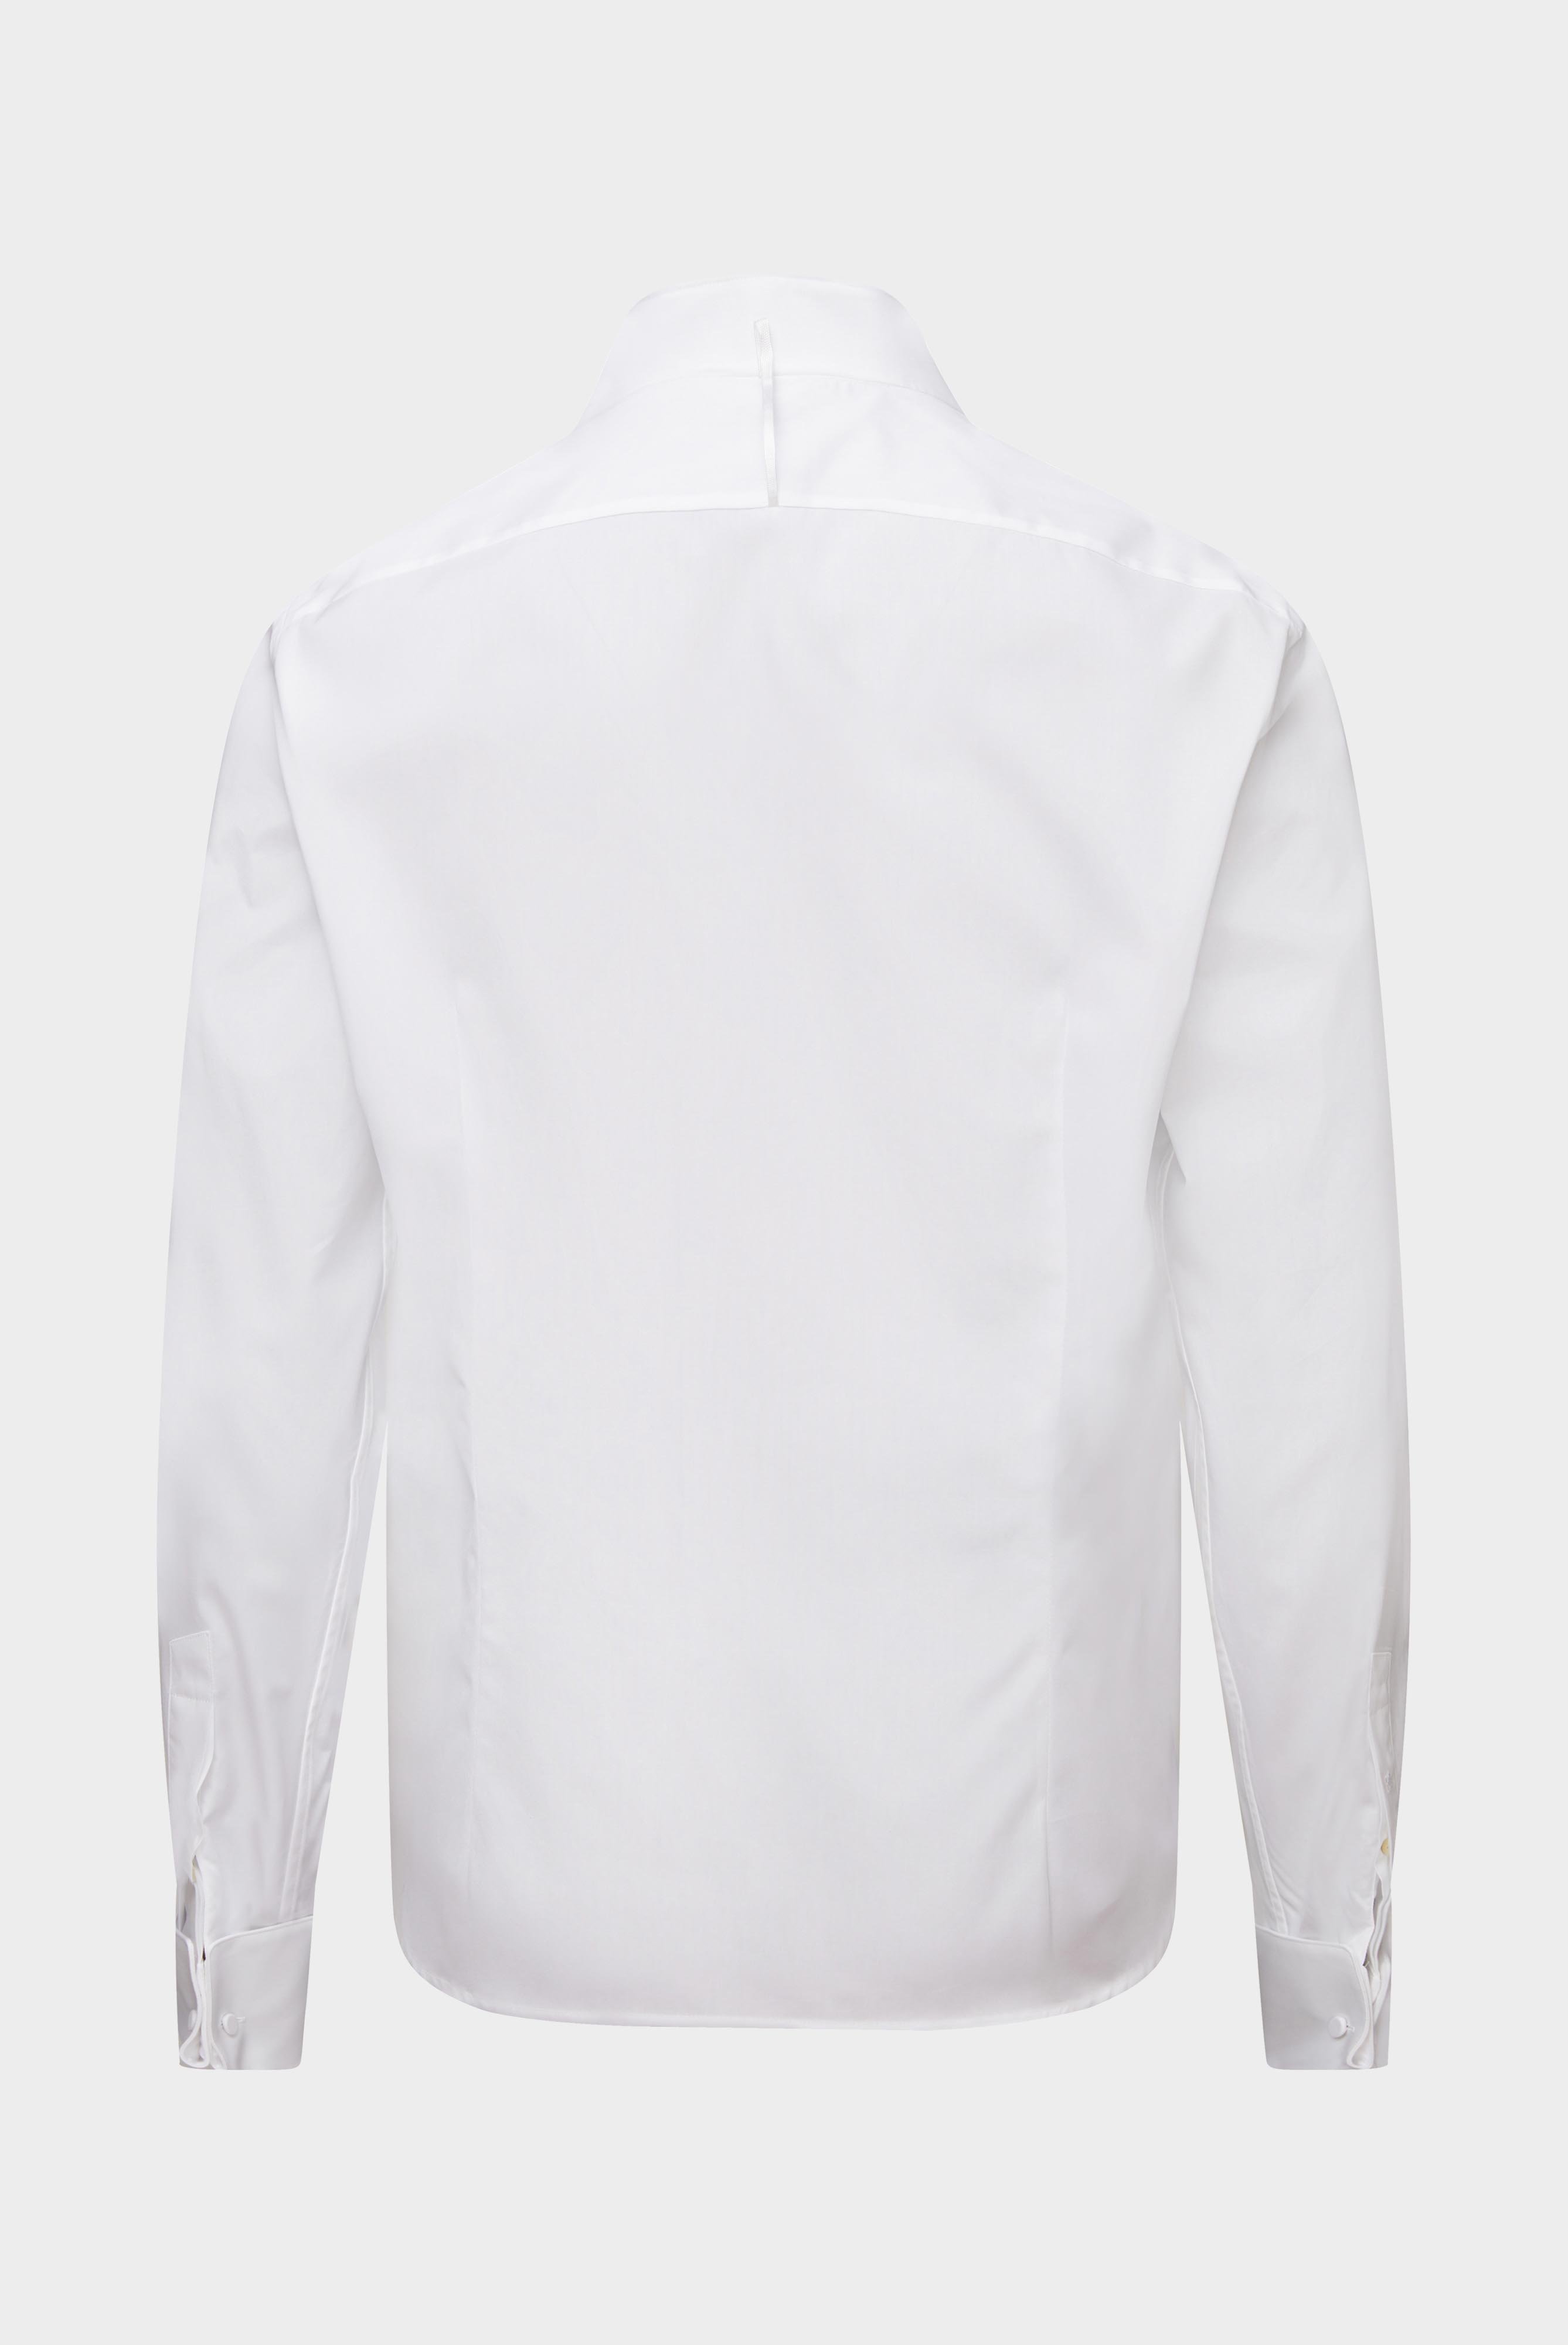 Festliche Hemden+Smokinghemd mit Kläppchenkragen Tailor Fit+20.2060.NV.130648.000.37